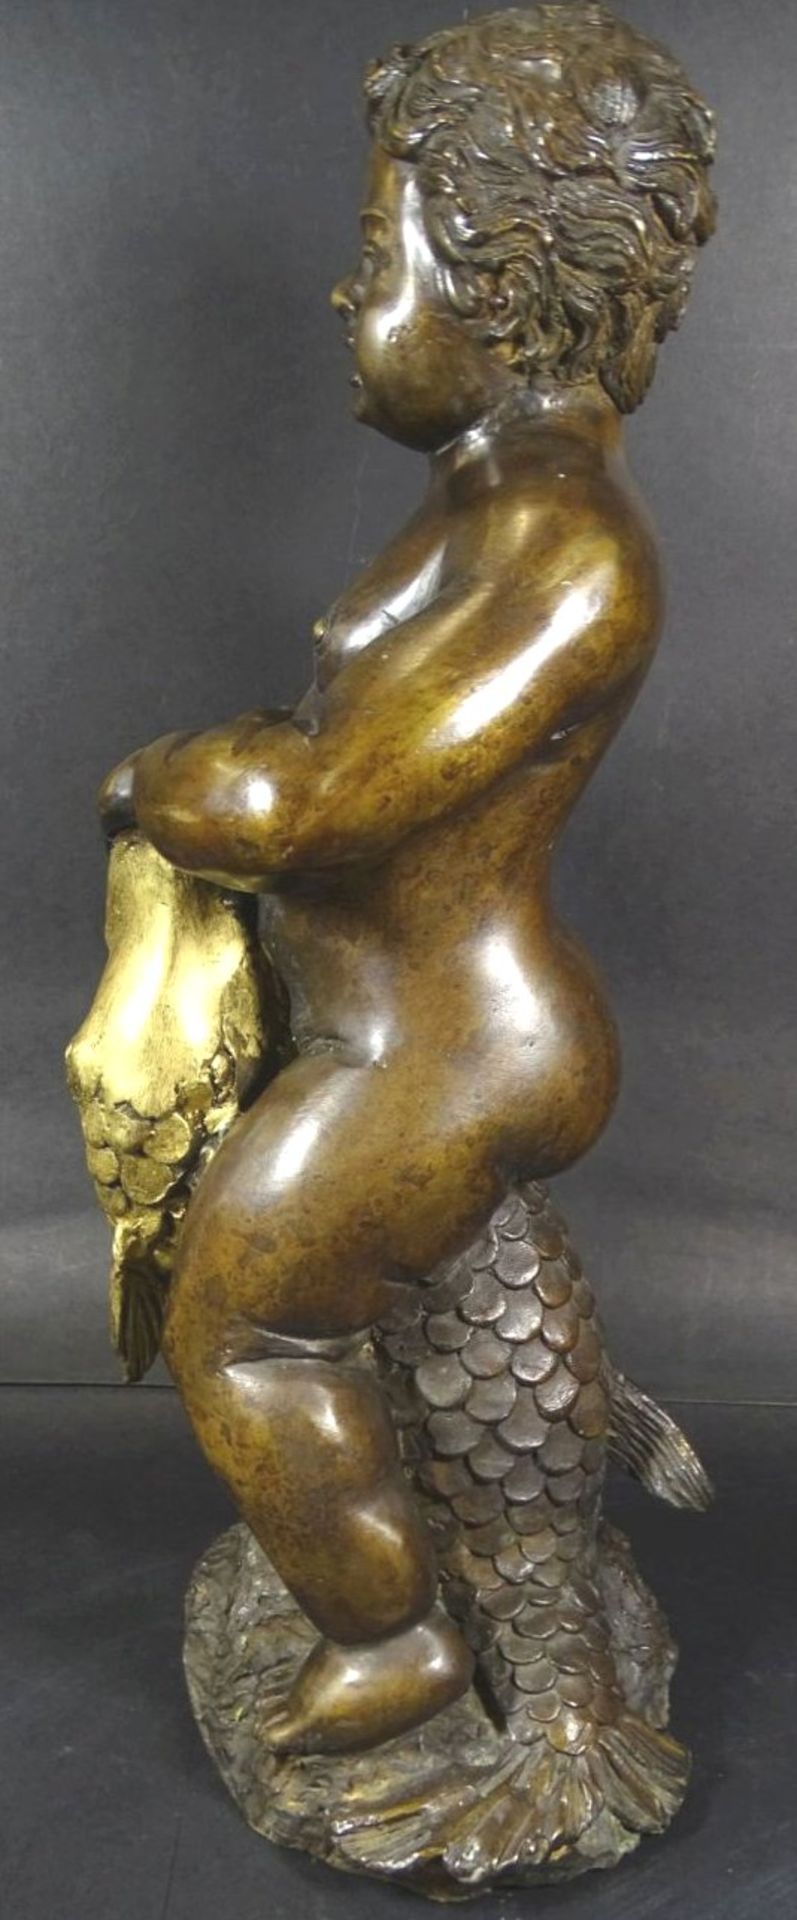 anonyme Bronze, Junge auf Fisch reitend, H-37 cm, 4,6 kg- - -22.61 % buyer's premium on the hammer - Bild 3 aus 7